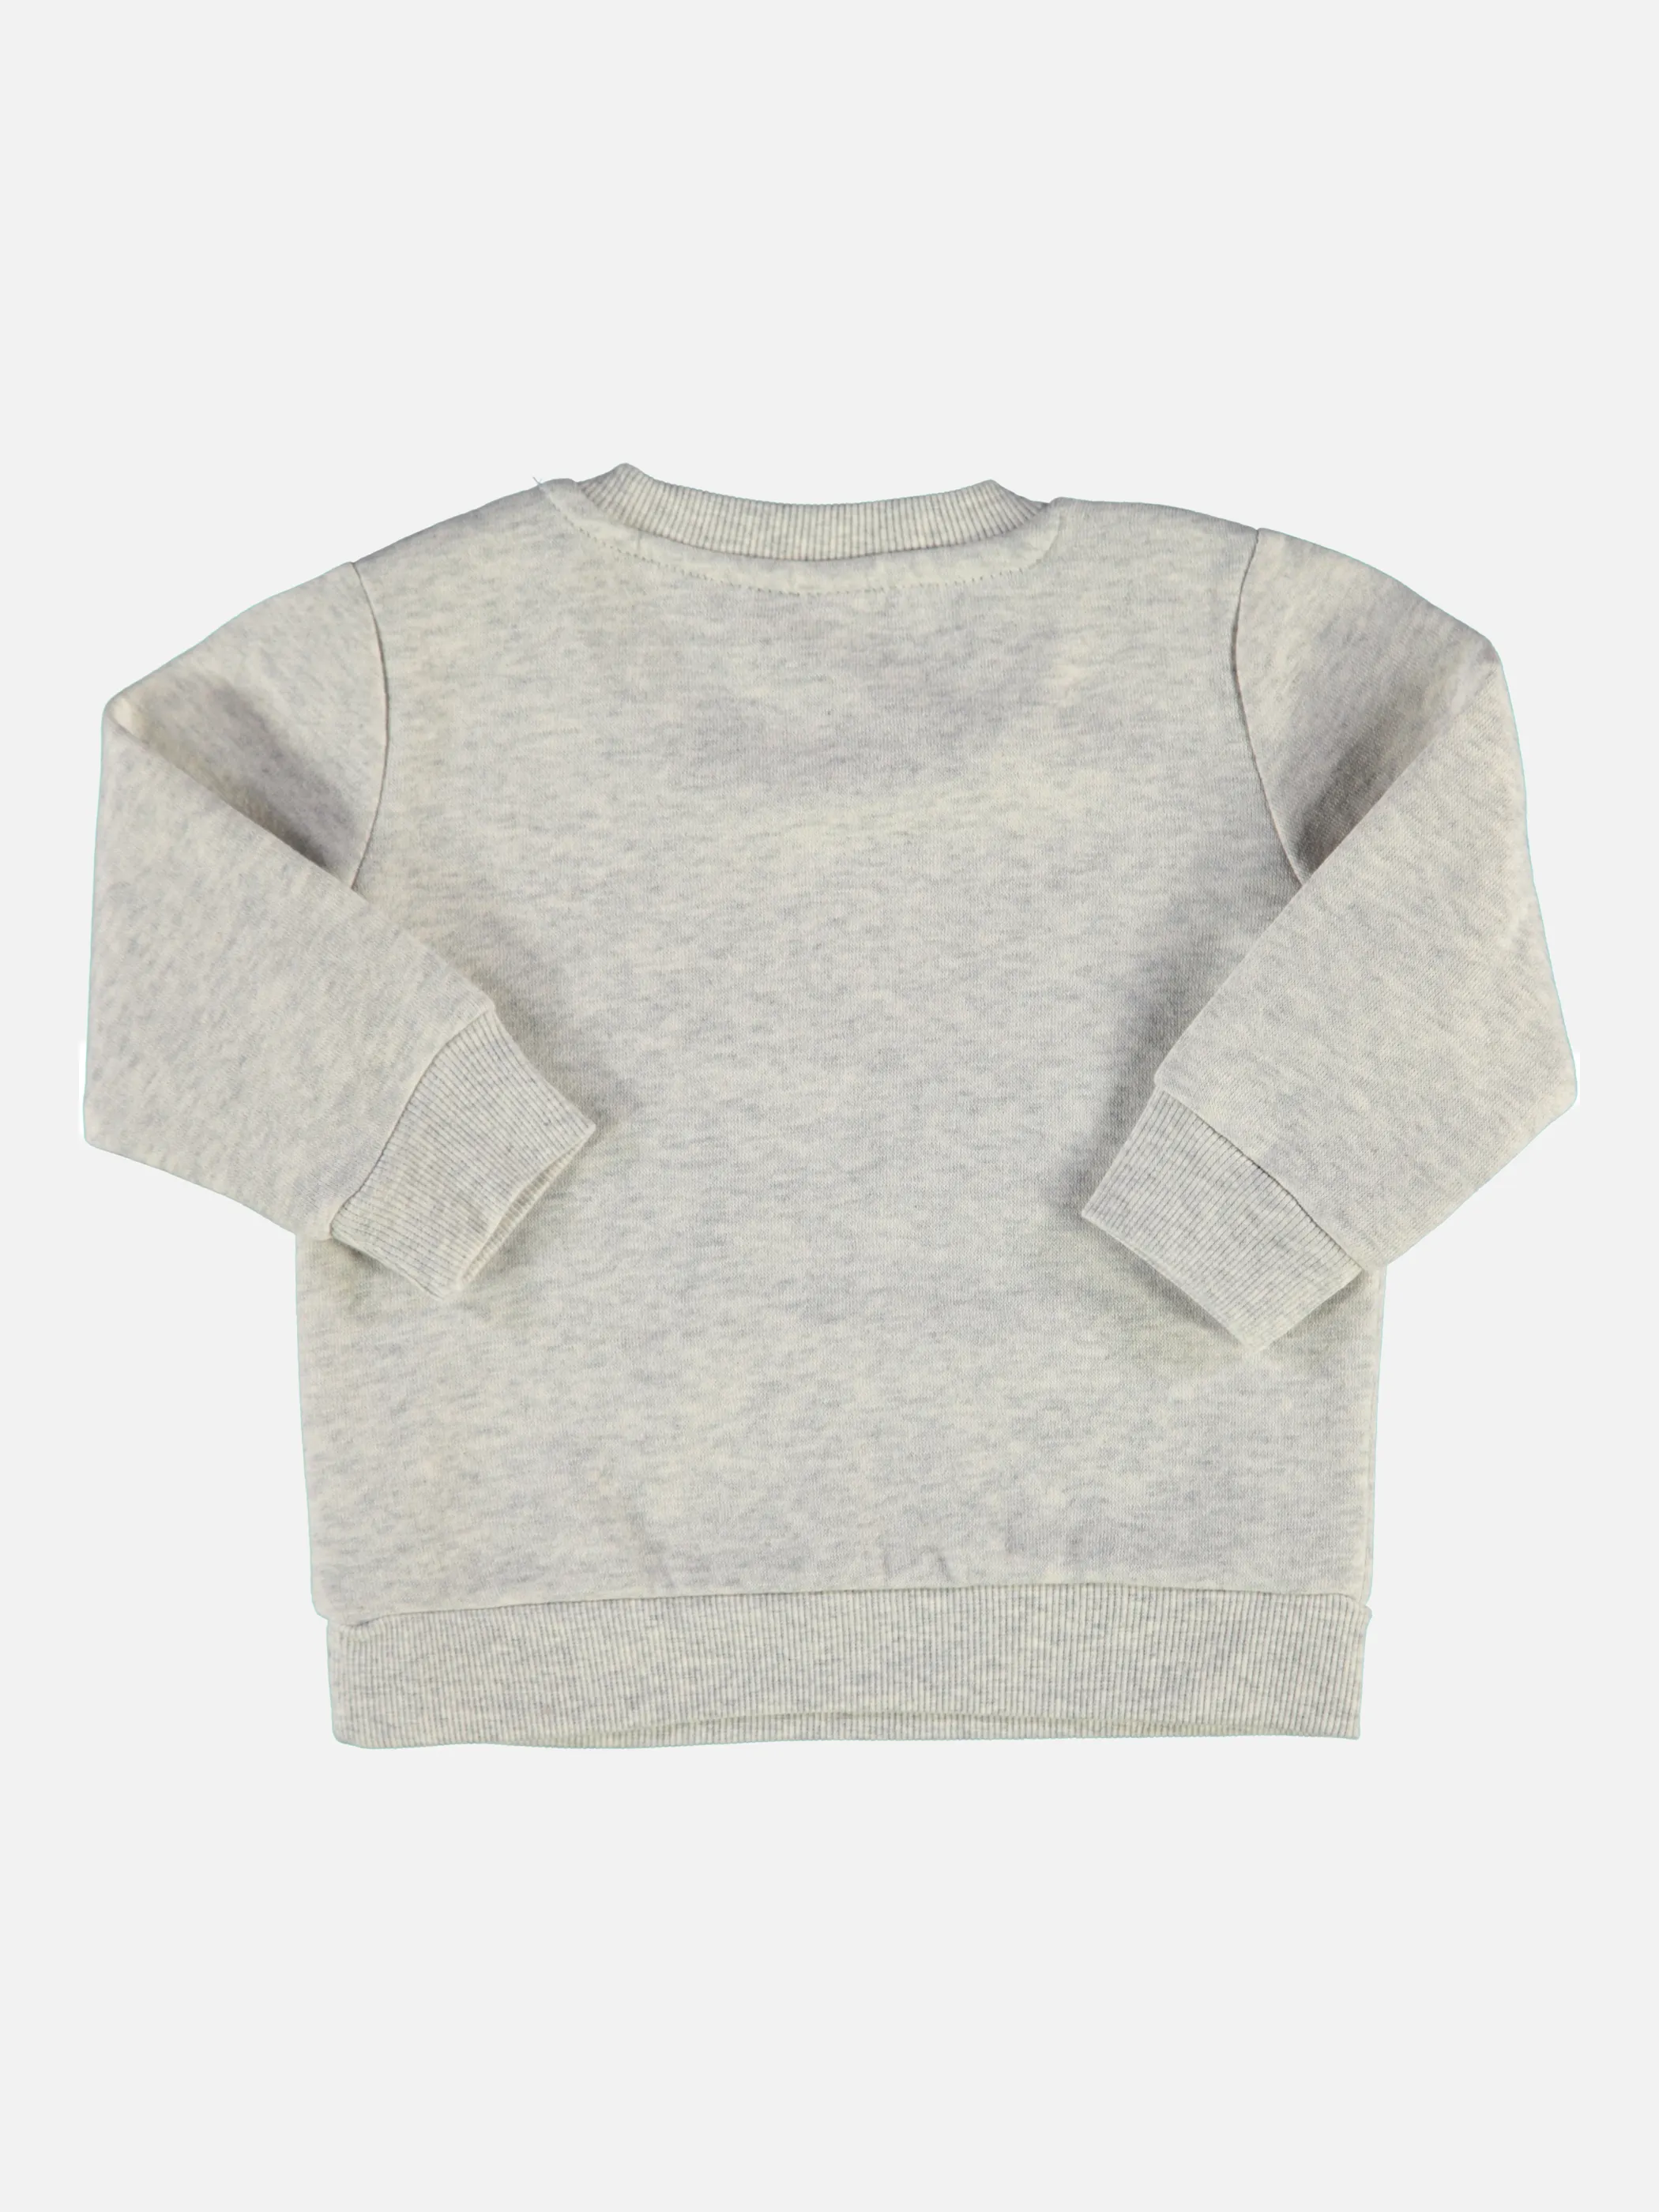 Bubble Gum BB Sweatshirt in grau mit Grau 847782 GRAU 2